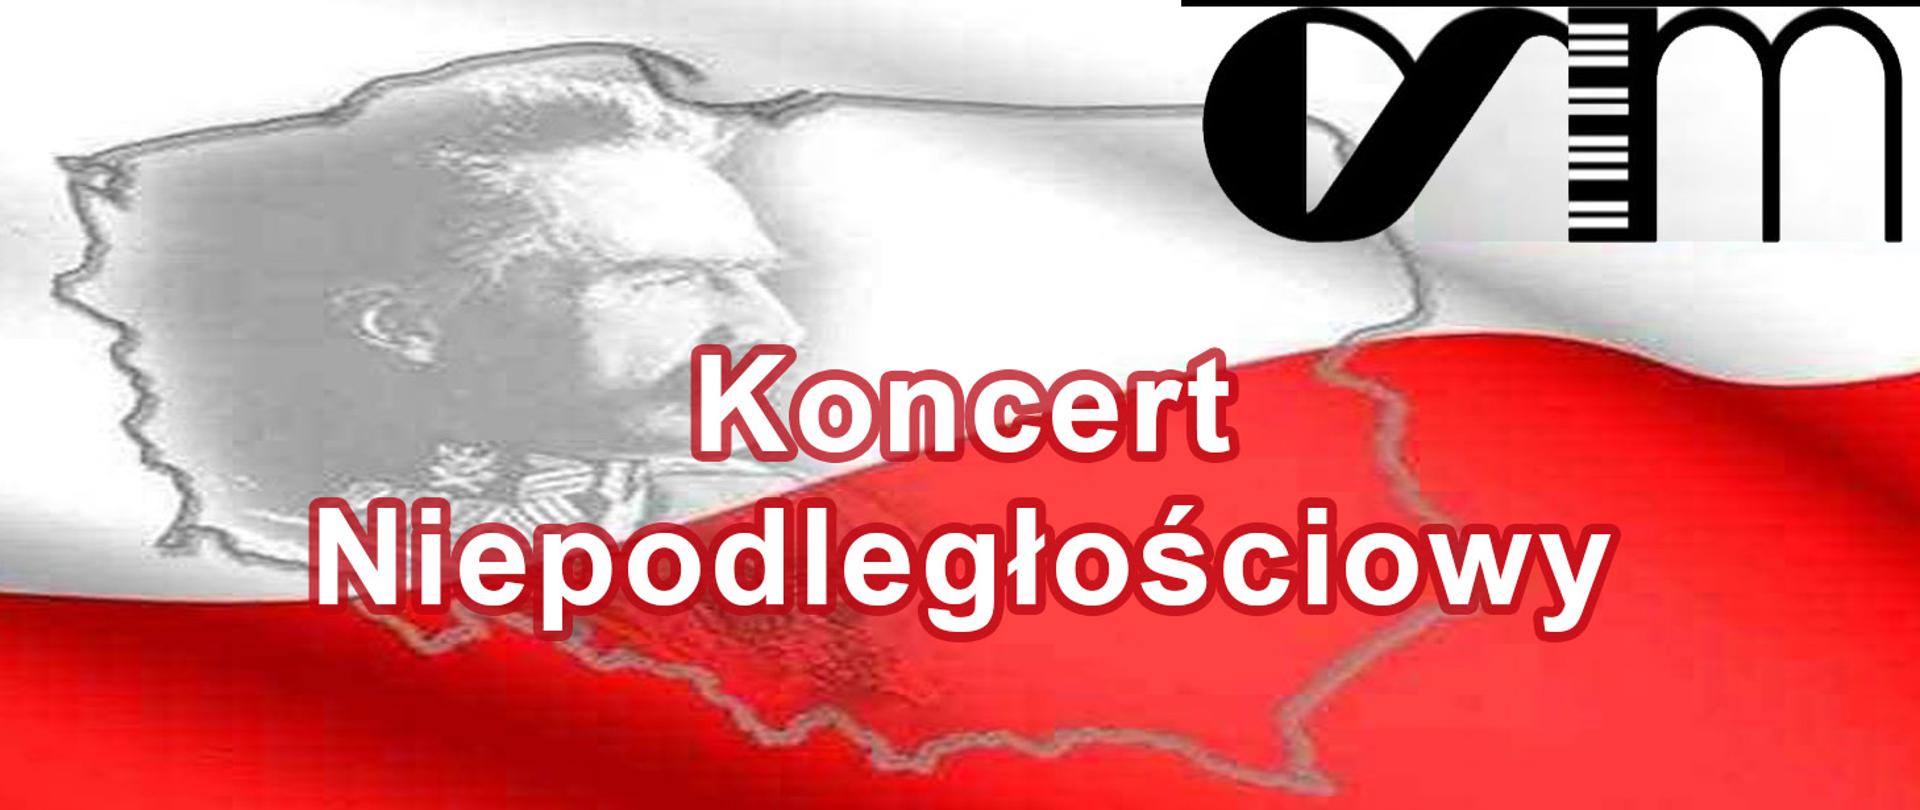 Na tle flagi biało-czerwonej kontur Polski. W obrysie umieszczone zdjęcie Józefa Piłsudskiego oraz tytuł Koncert Niepodległościowy.
W prawym górnym rogu czarno-białe logo szkoły. 